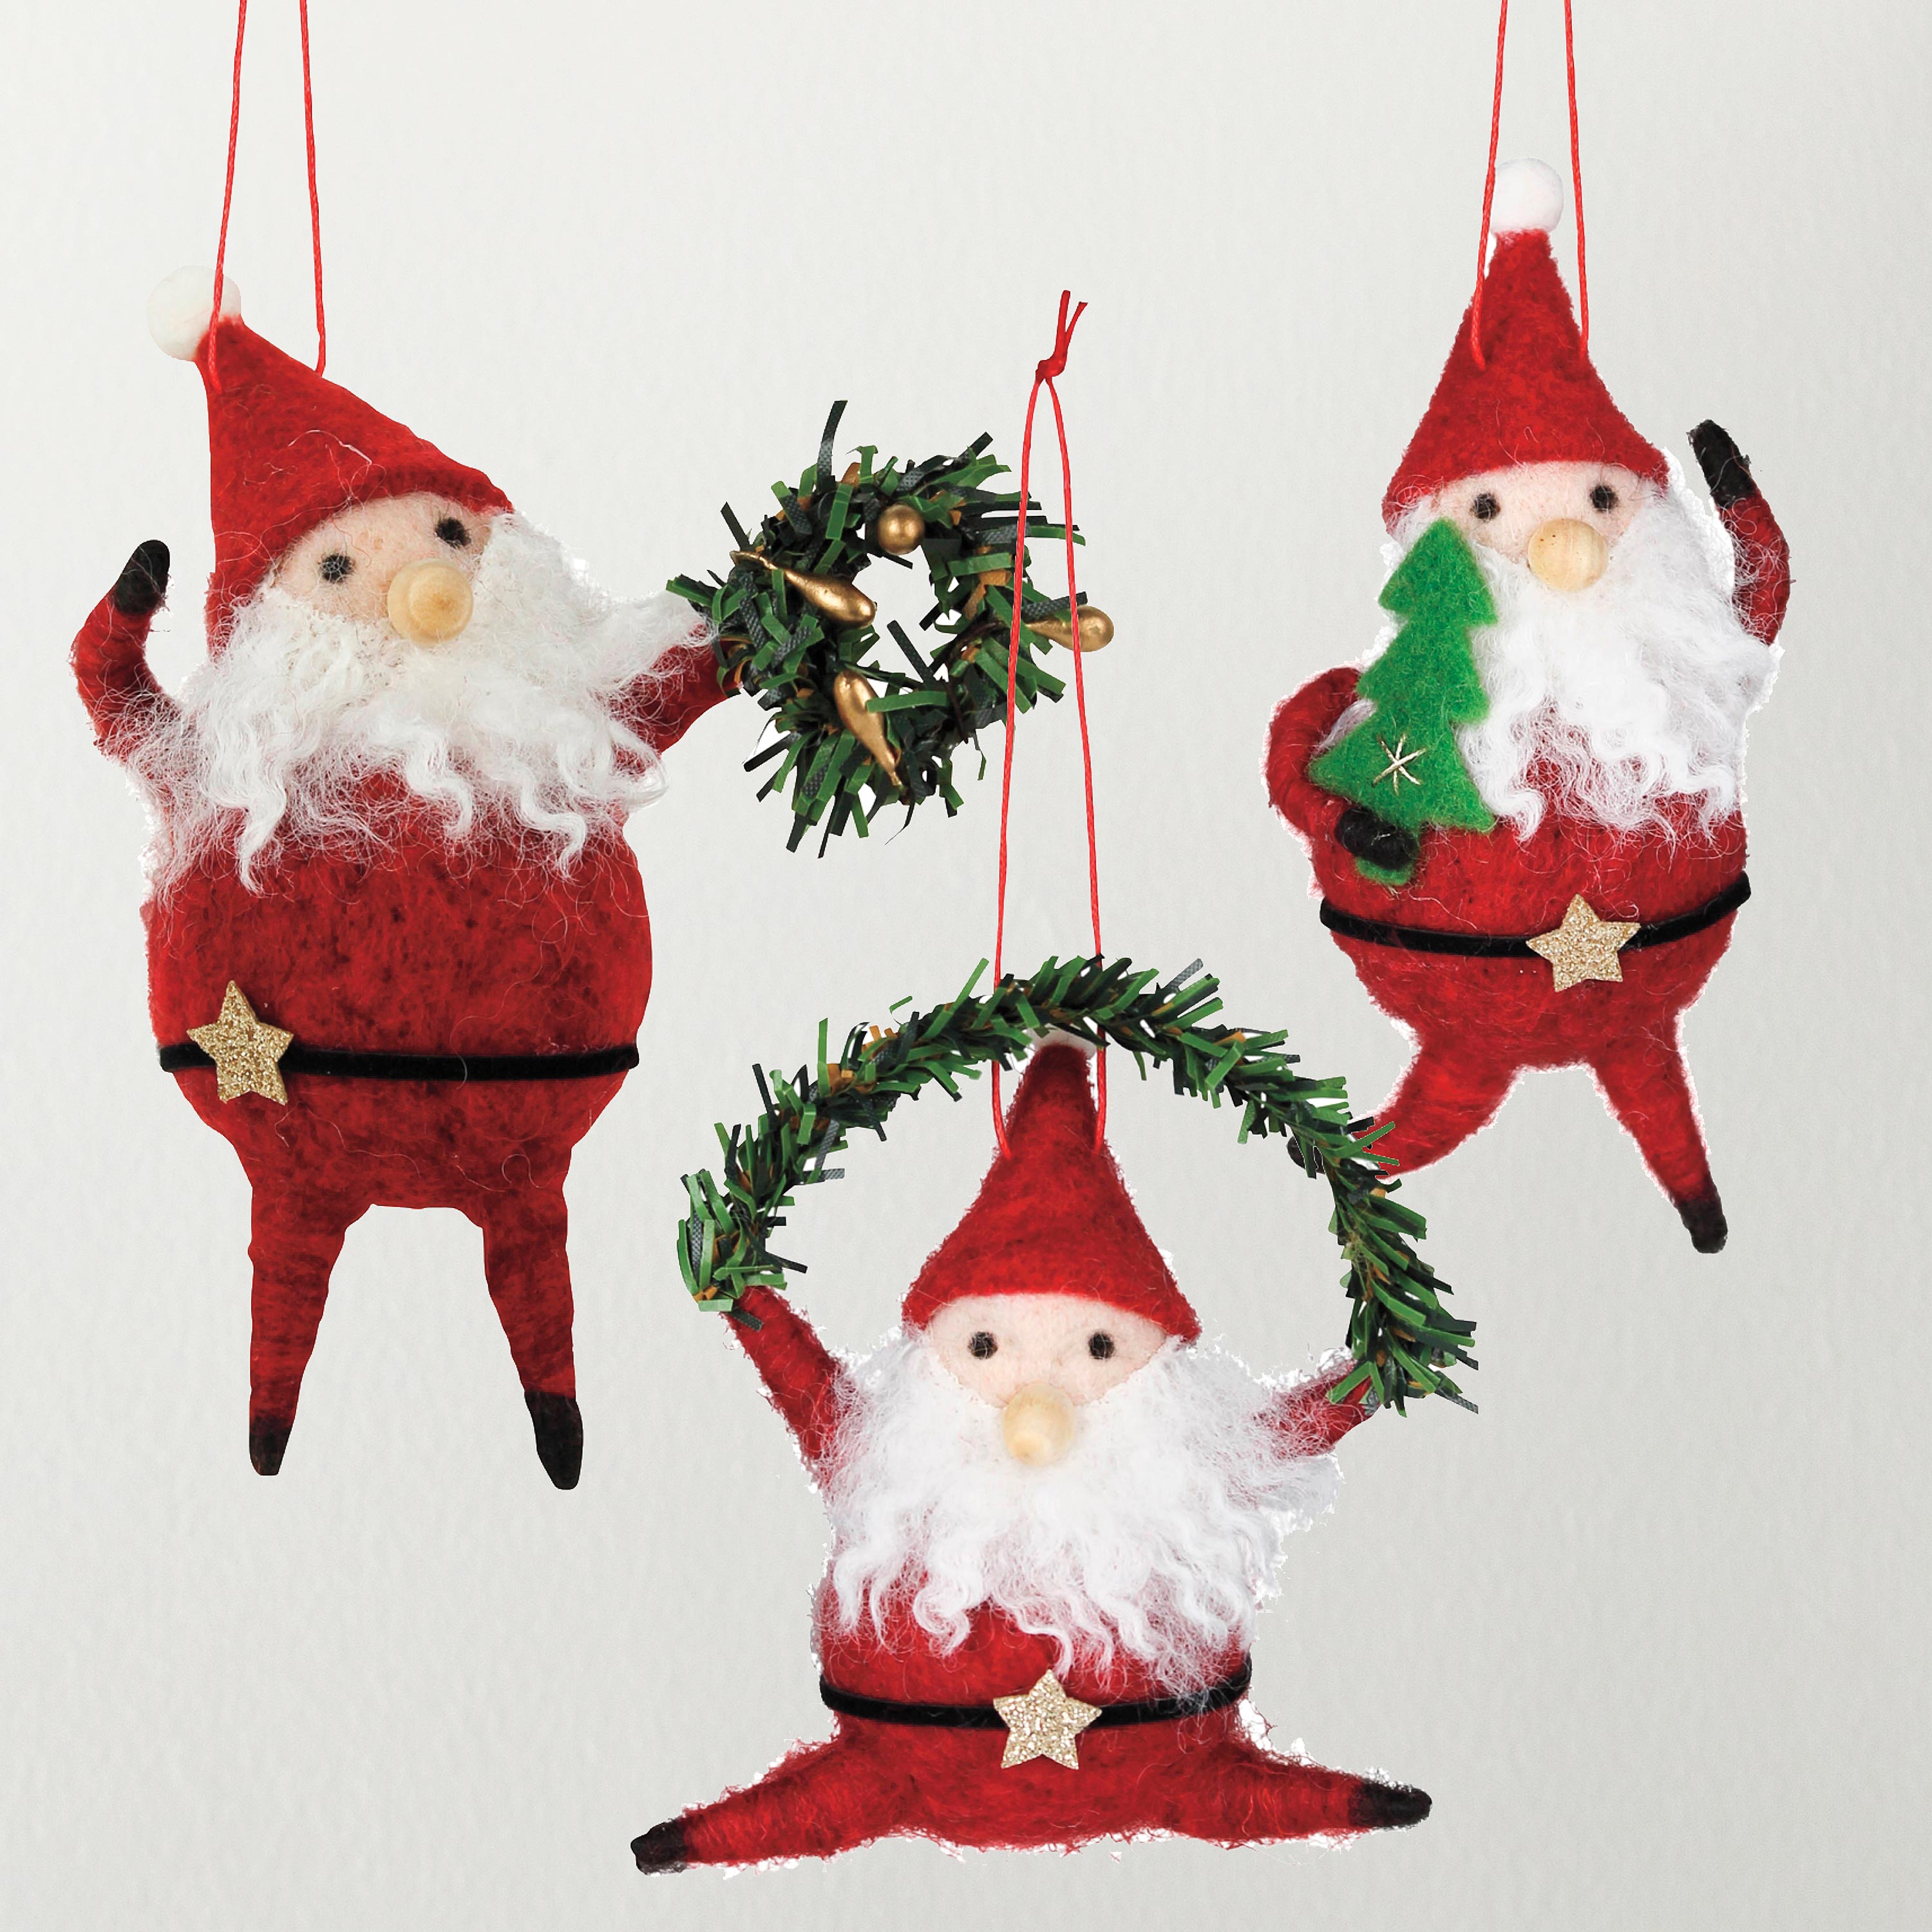 Dancing Felt Santa Ornaments, Set of 3